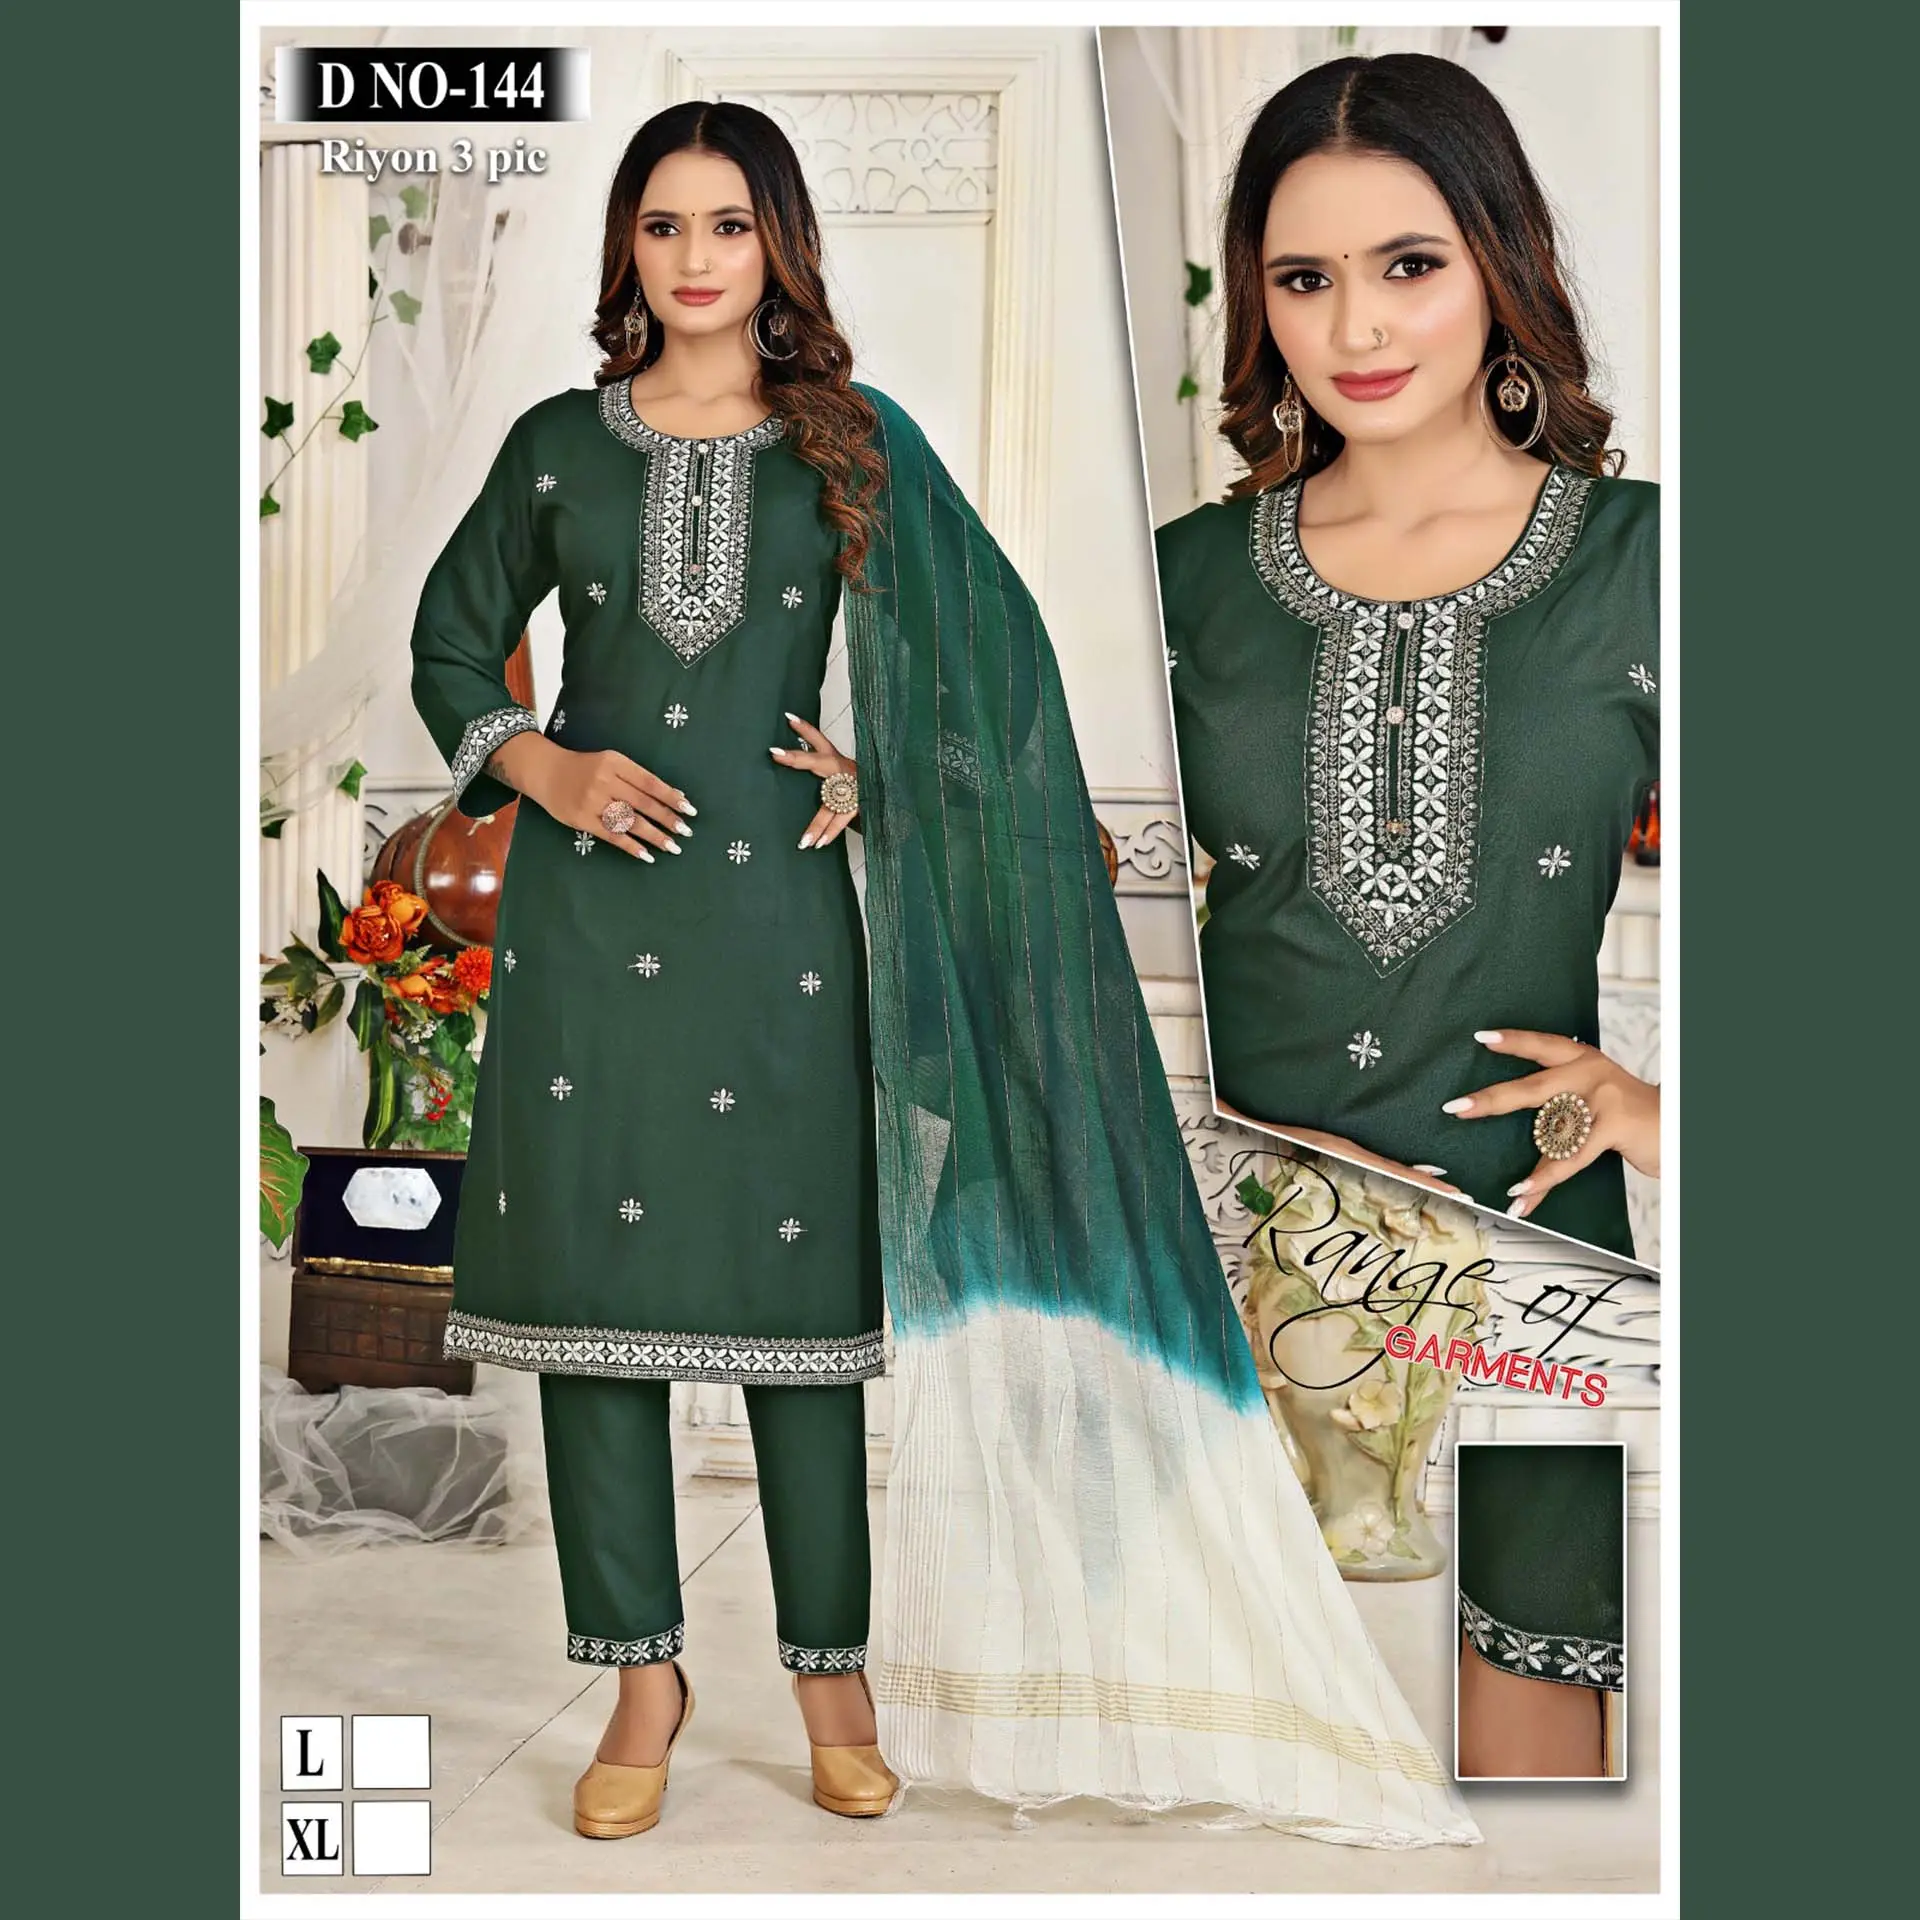 Высокий спрос, высококачественные брюки Kurti и комплект Dupatta, модная индийская и Пакистанская одежда с печатной вышивкой, оптовая продажа